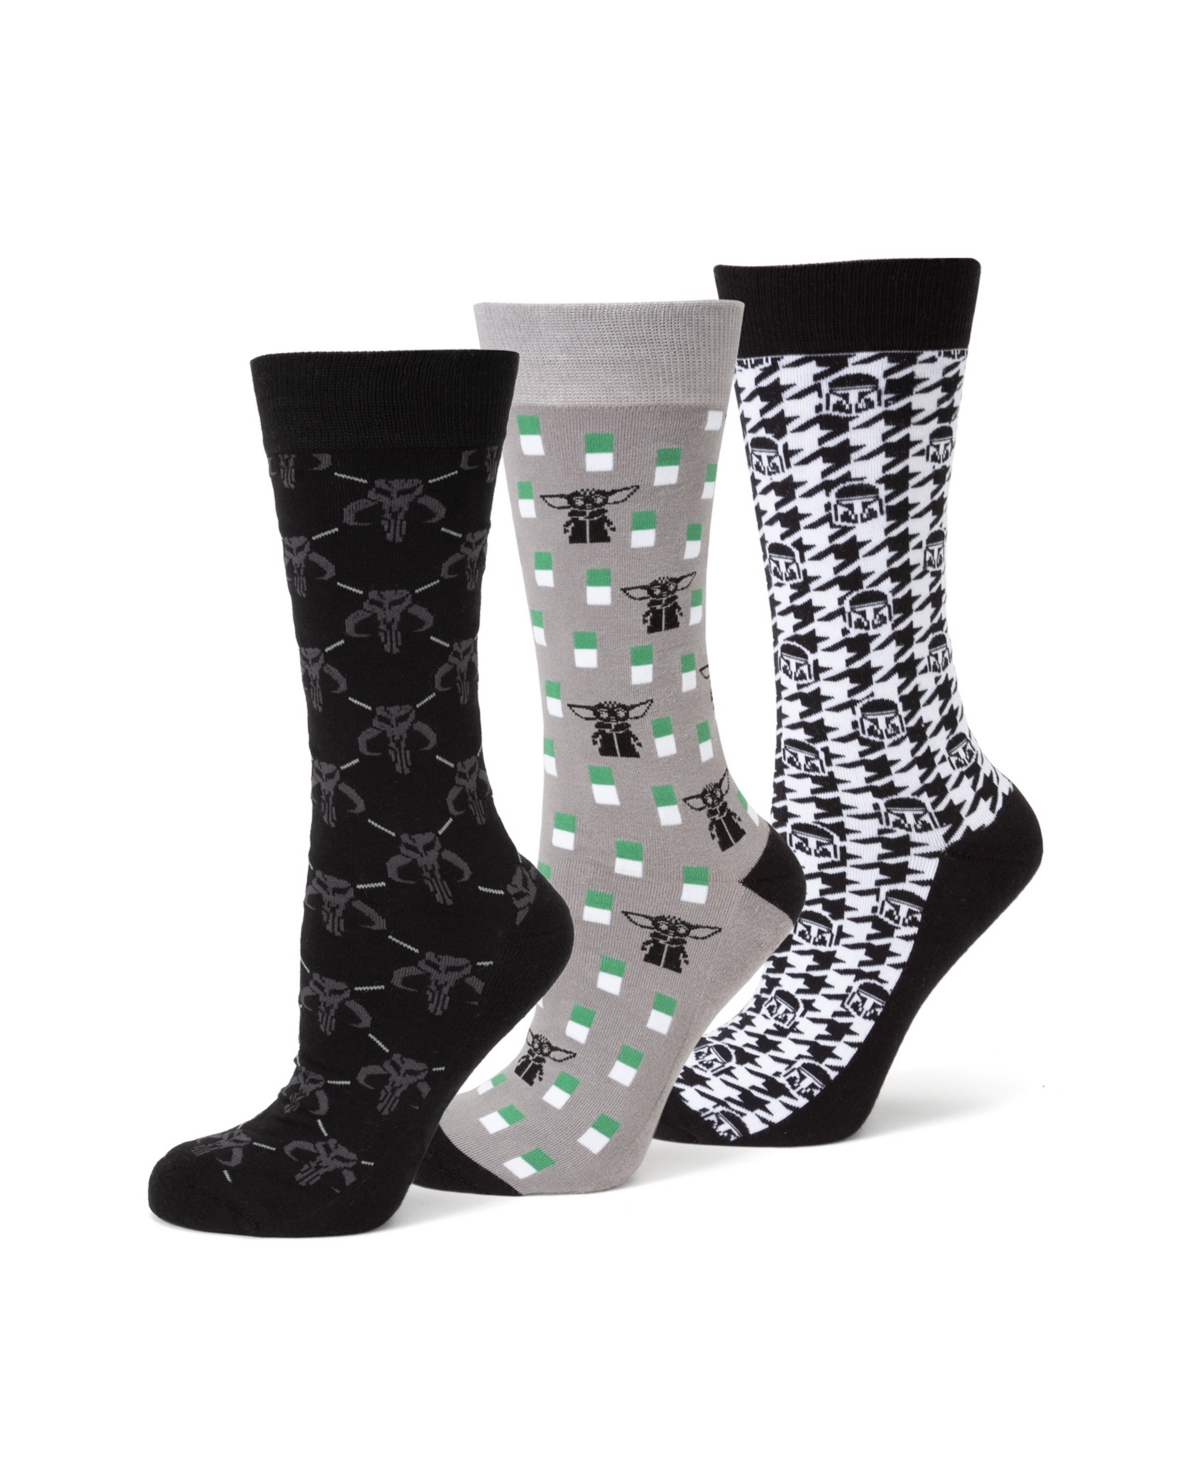 Men's The Mandalorian Socks Gift Set, Pack of 3 - Multi